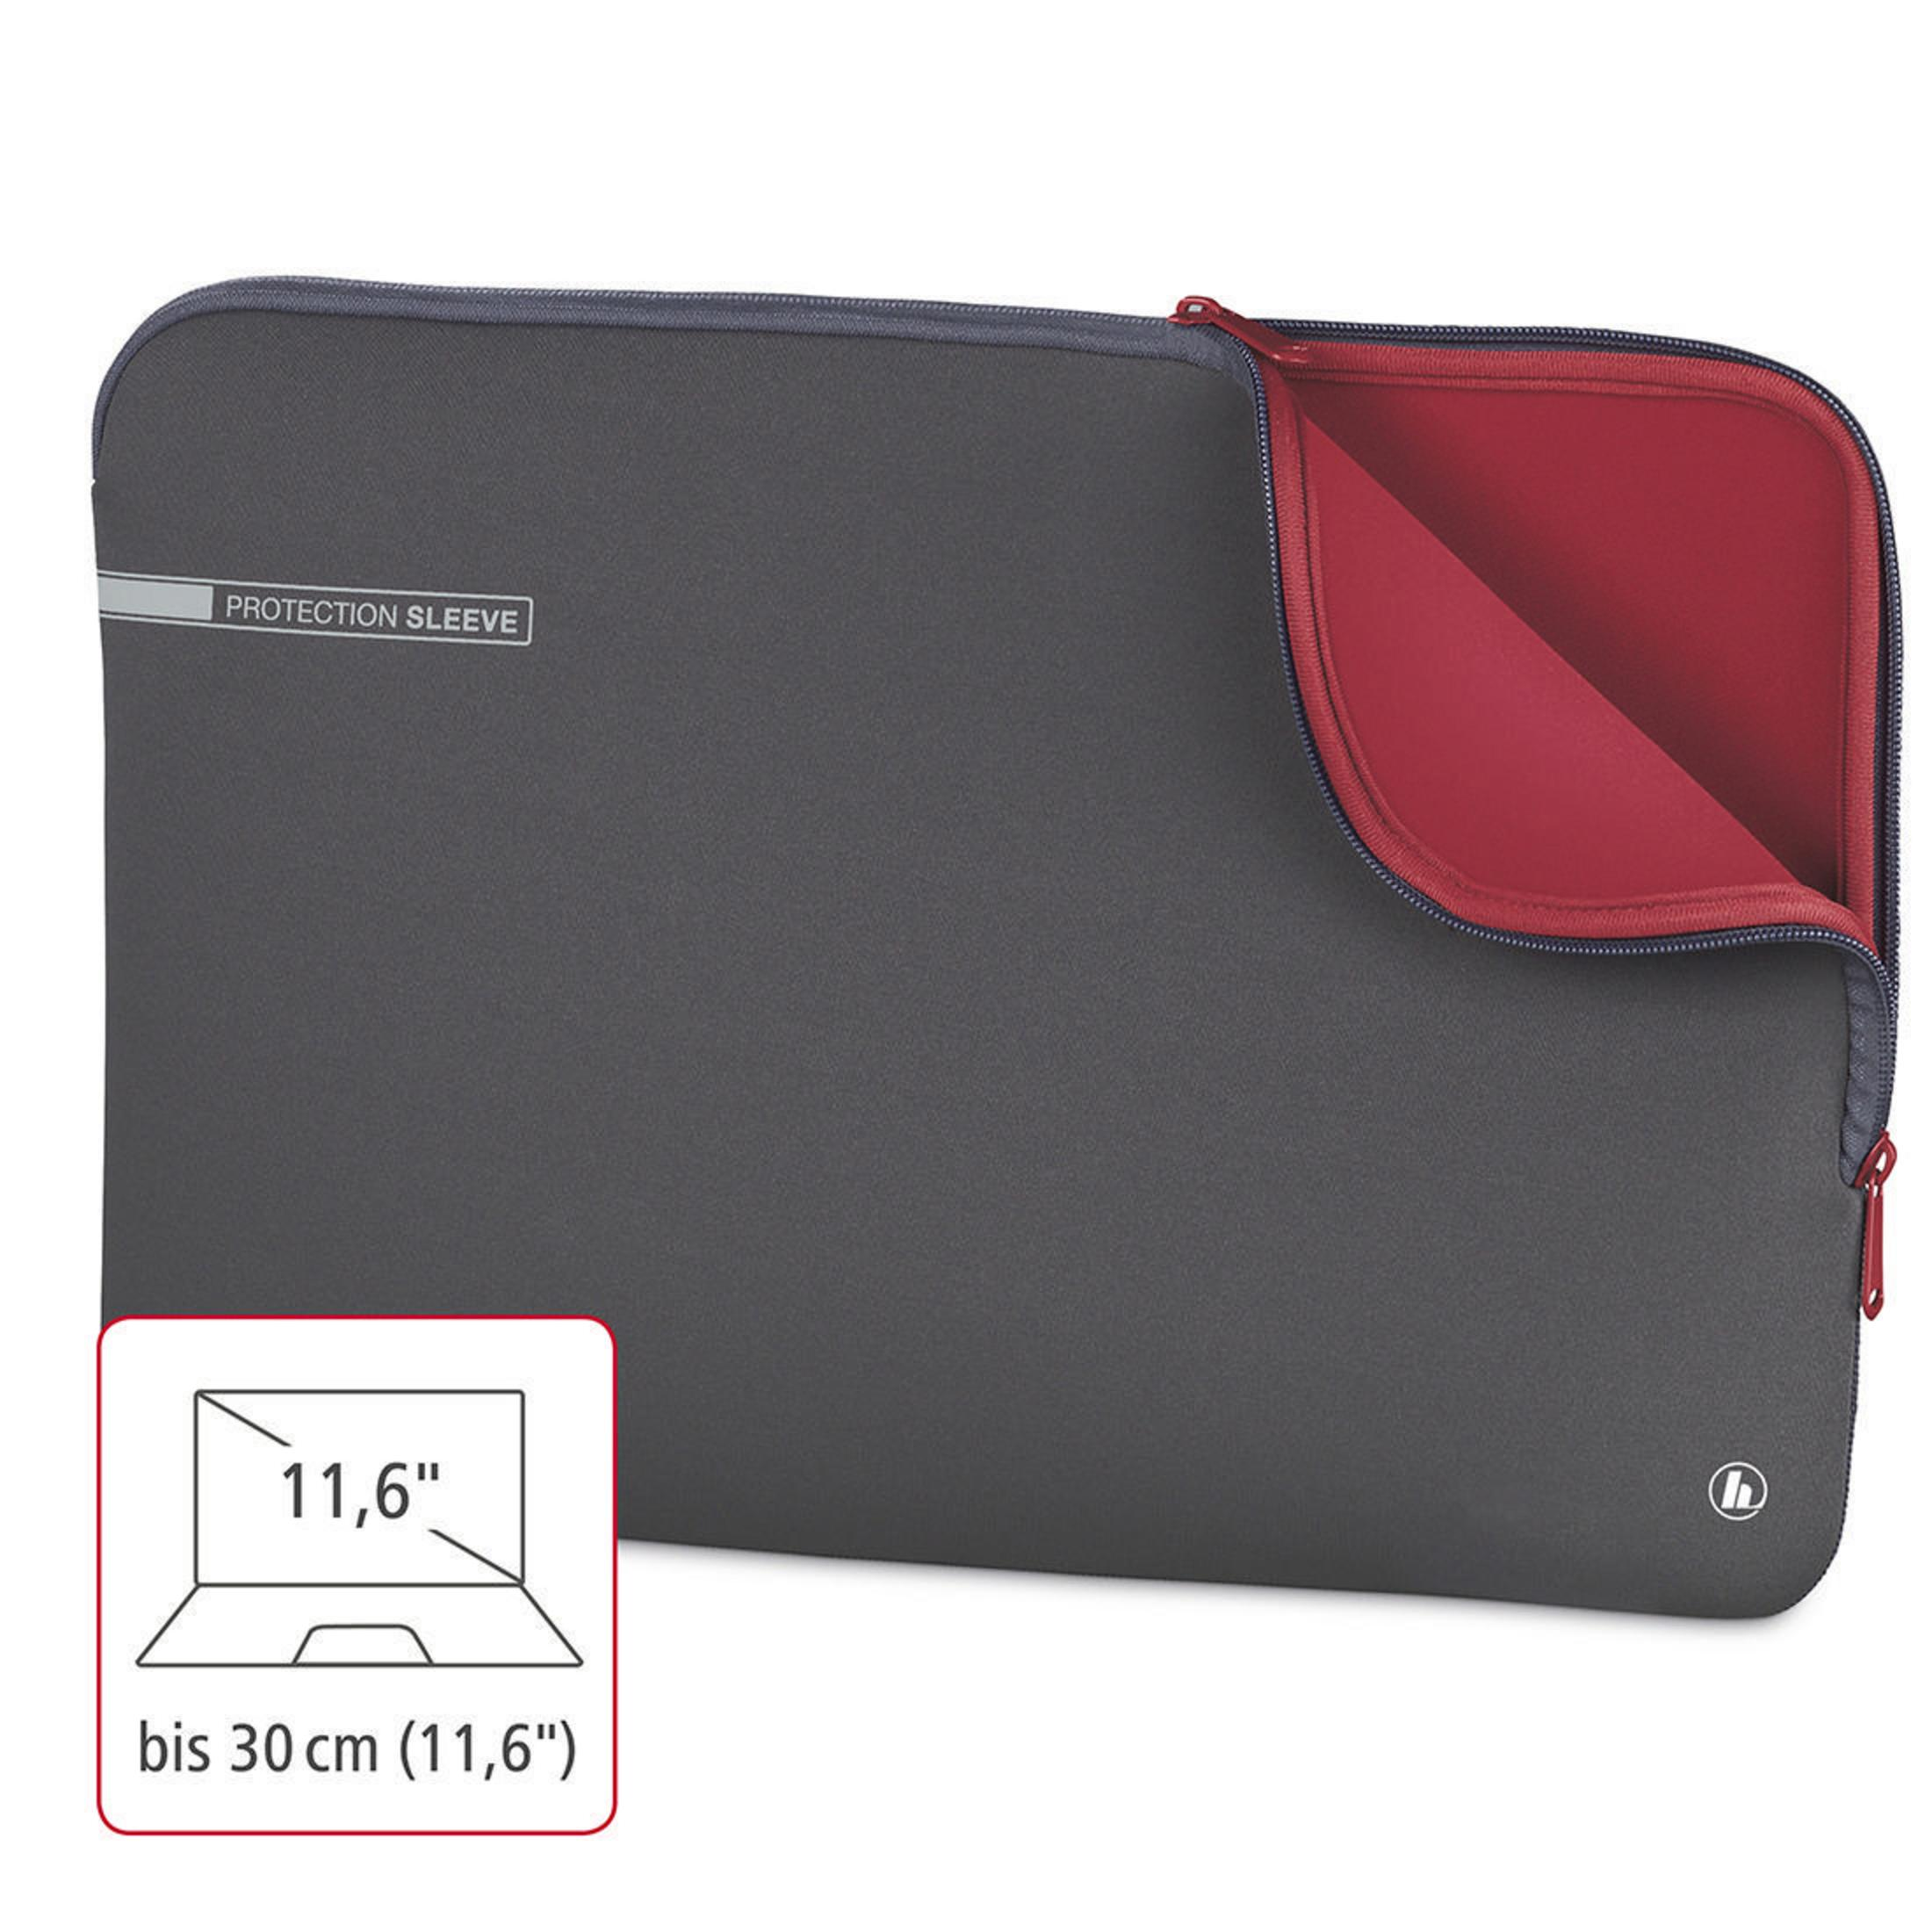 Sleeve HAMA Universal NB-SLE 101548 Grau/Rot Neopren, Notebooktasche GR NEO für 11.6